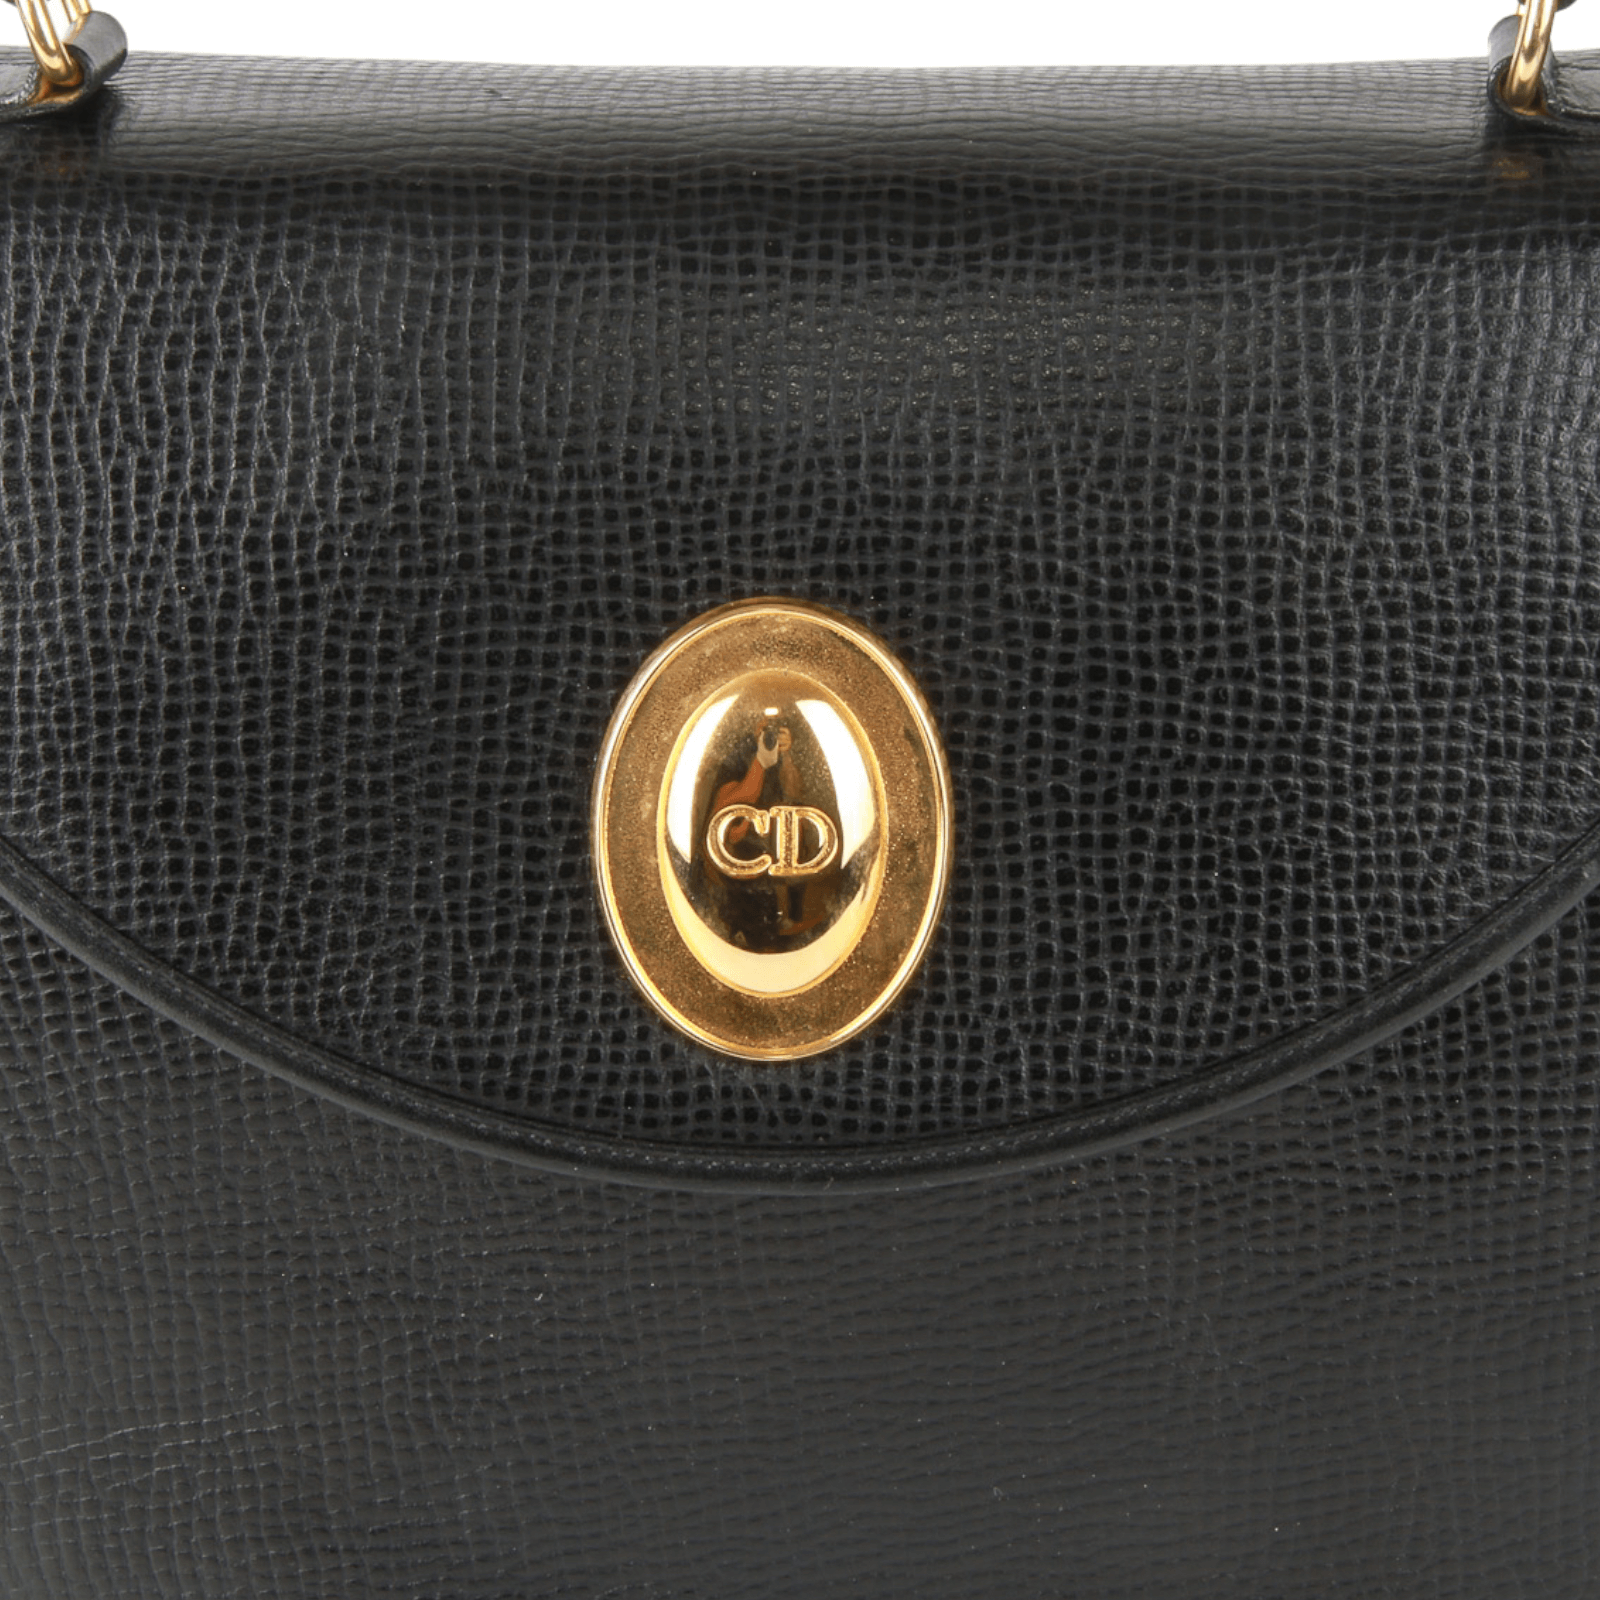 Vintage Christian Dior Embossed Black Wallet 